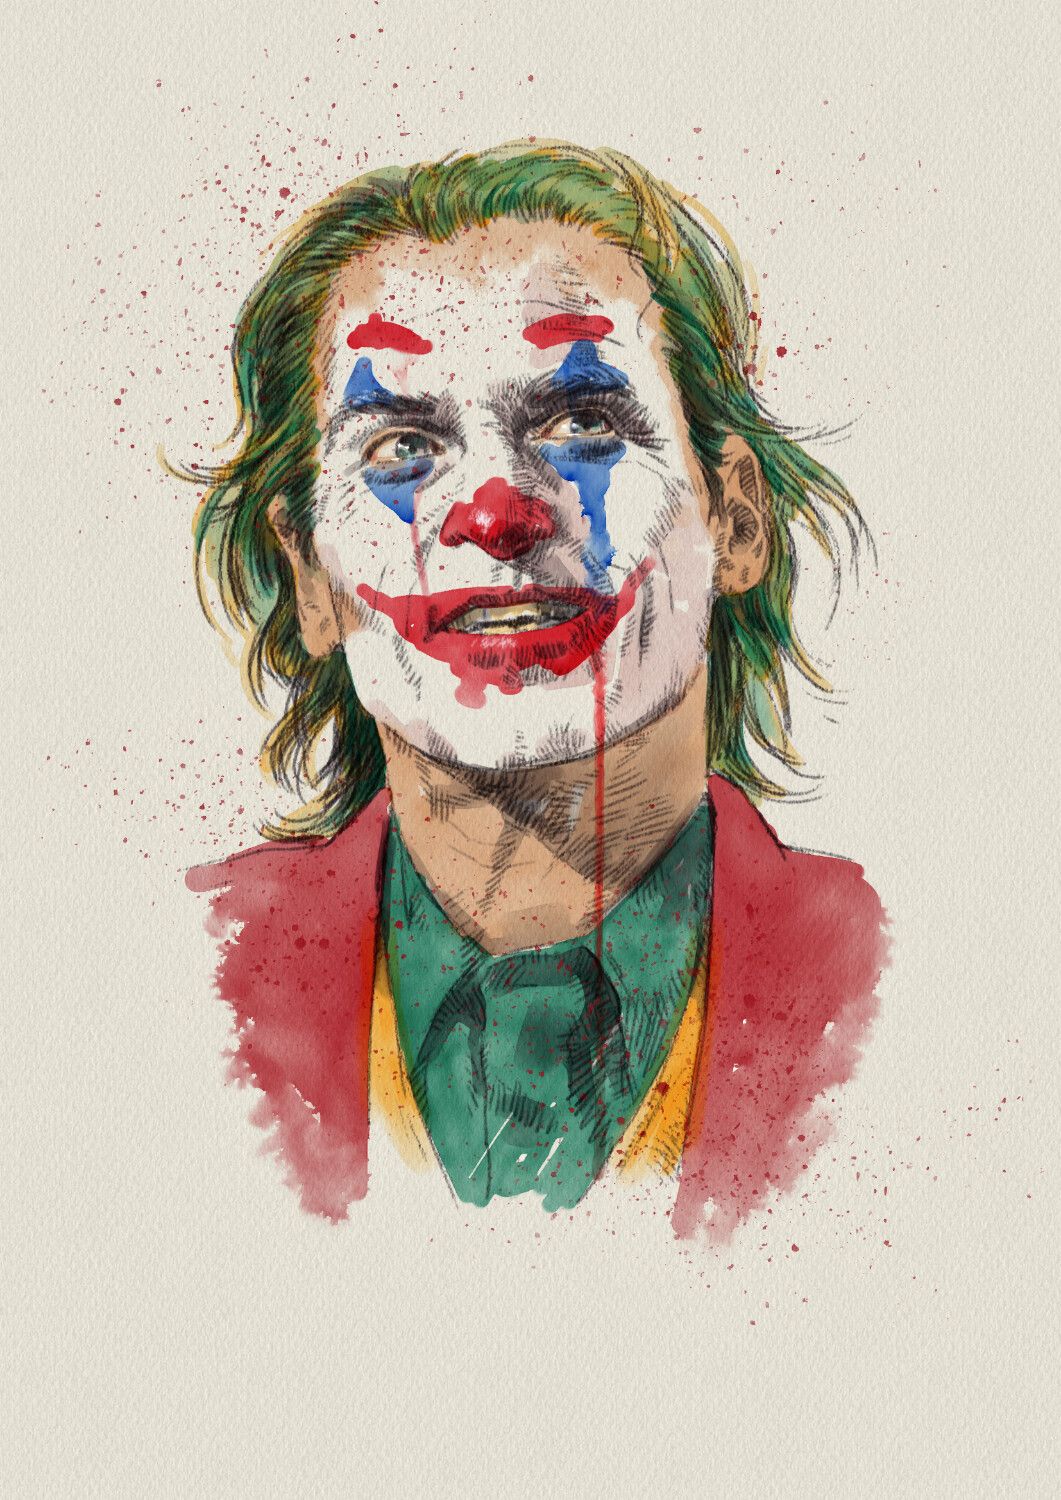 Joker. Joker art, Joker drawings, Joker painting